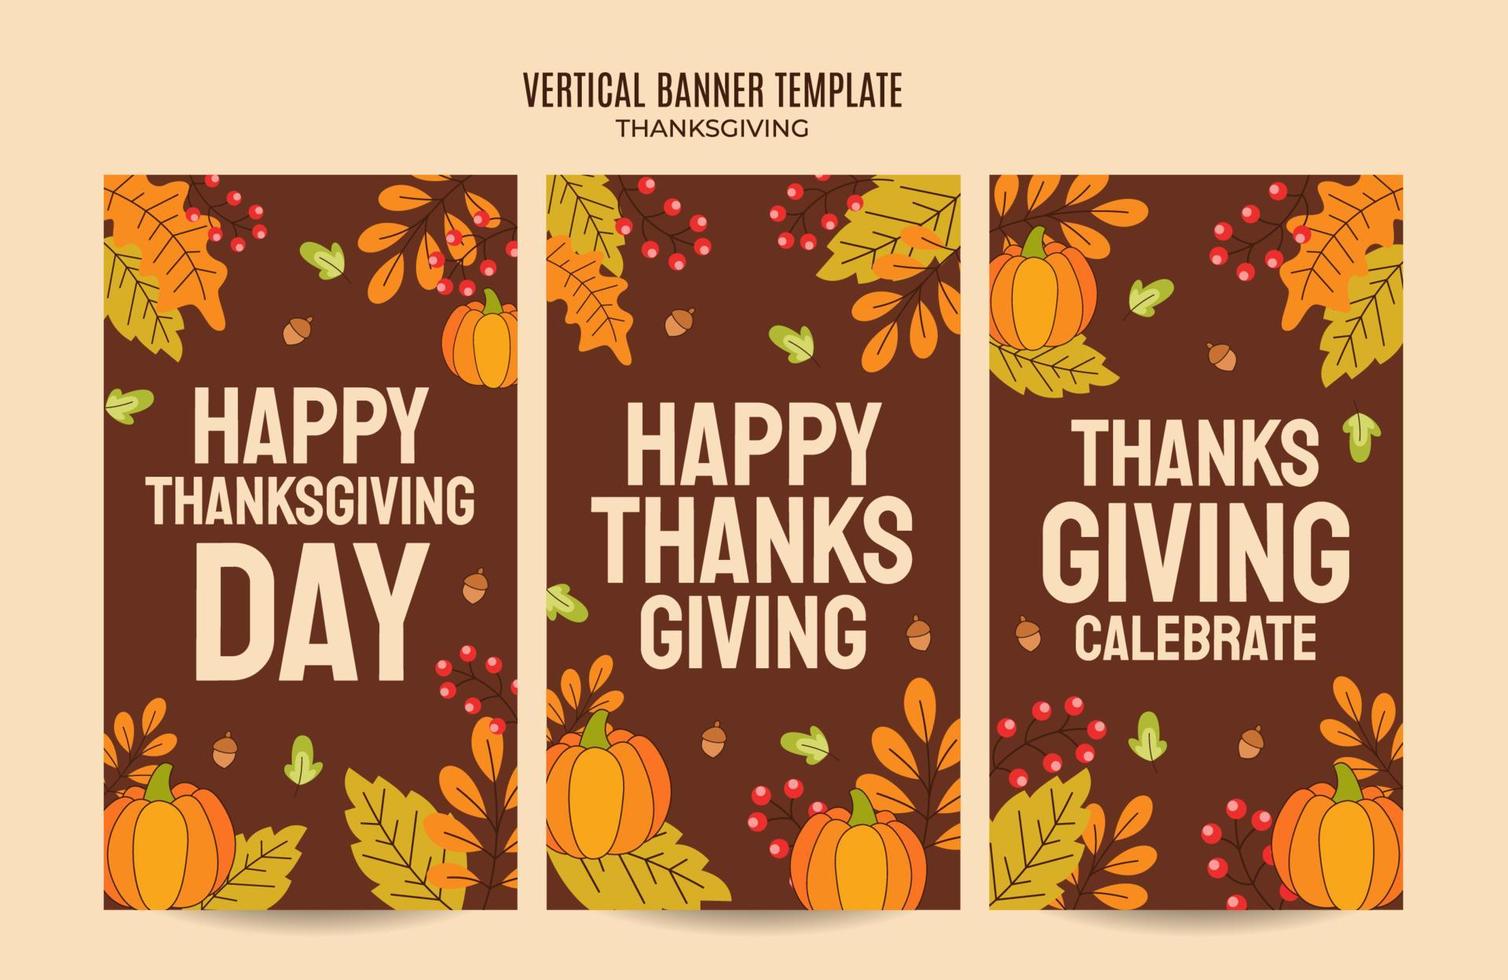 Thanksgiving-Design für Werbung, Banner, Flugblätter und Flyer vektor